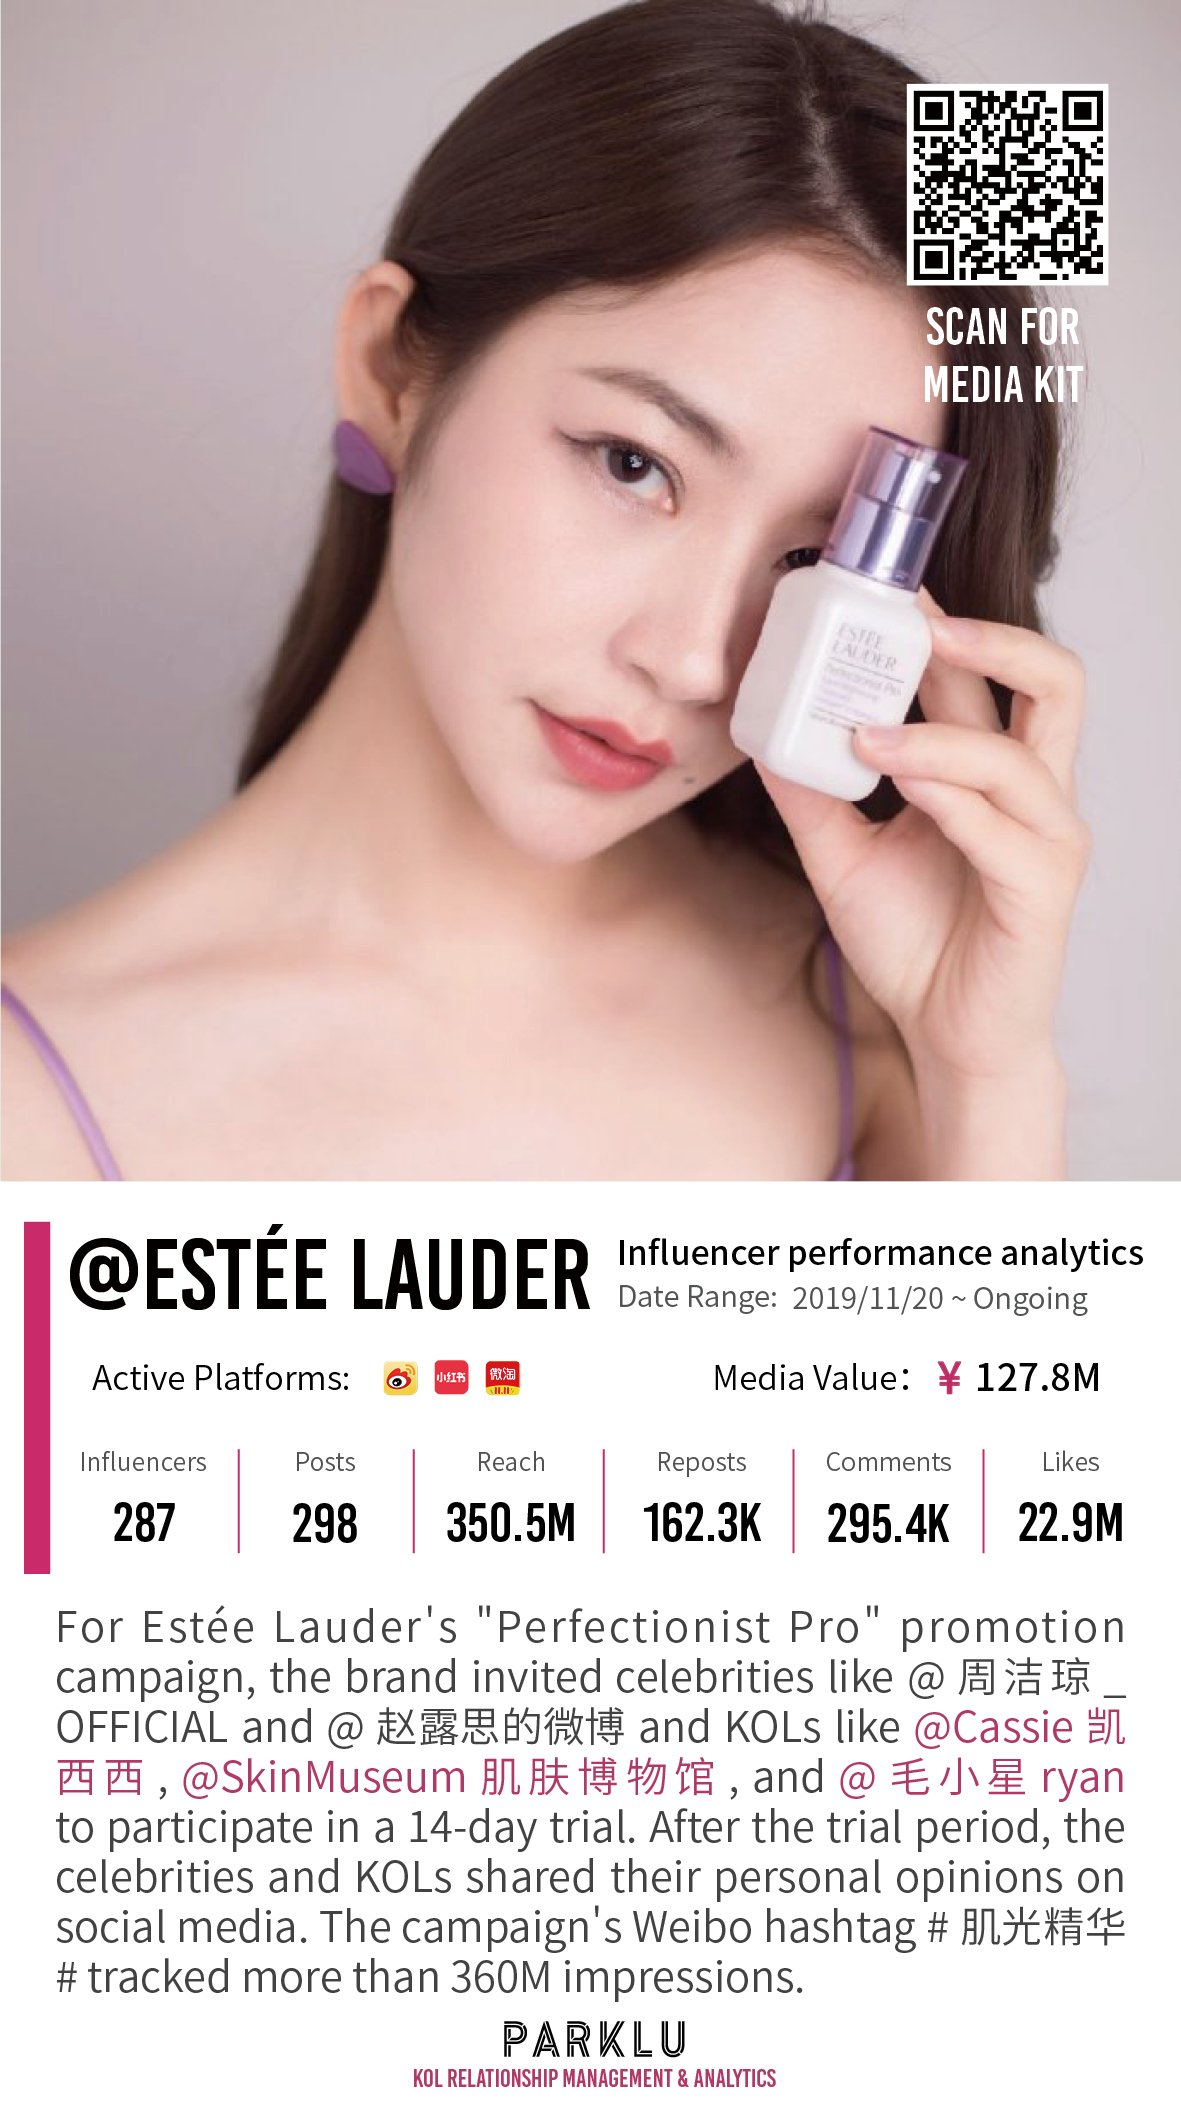 Estée Lauder's Product Promotion Campaign